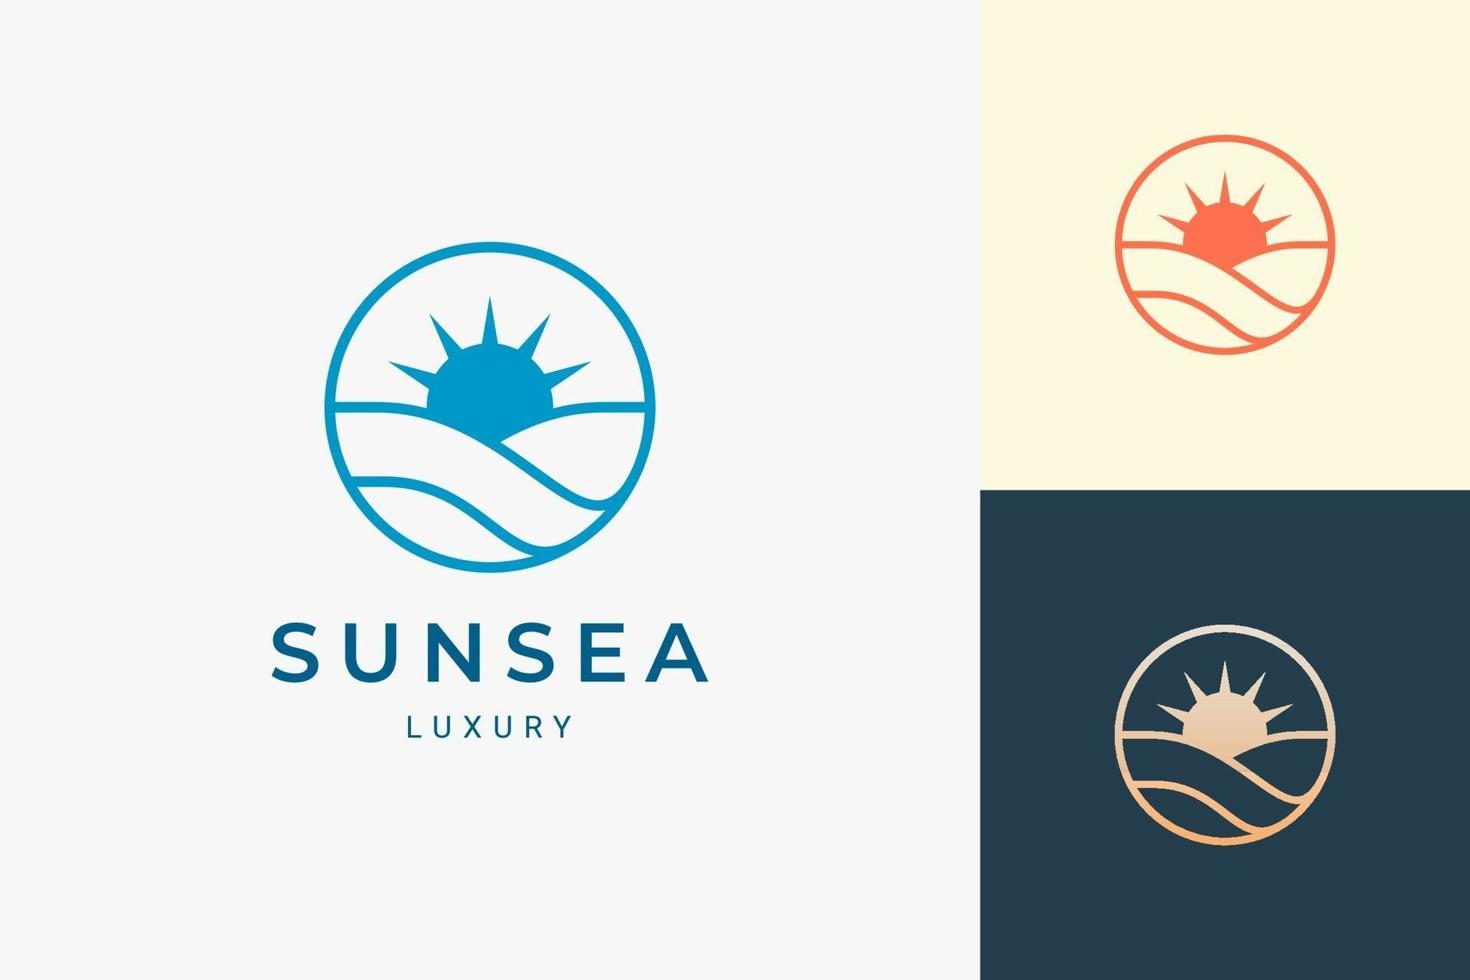 Logotipo simple de mar o surf con ola oceánica y sol en forma de círculo vector